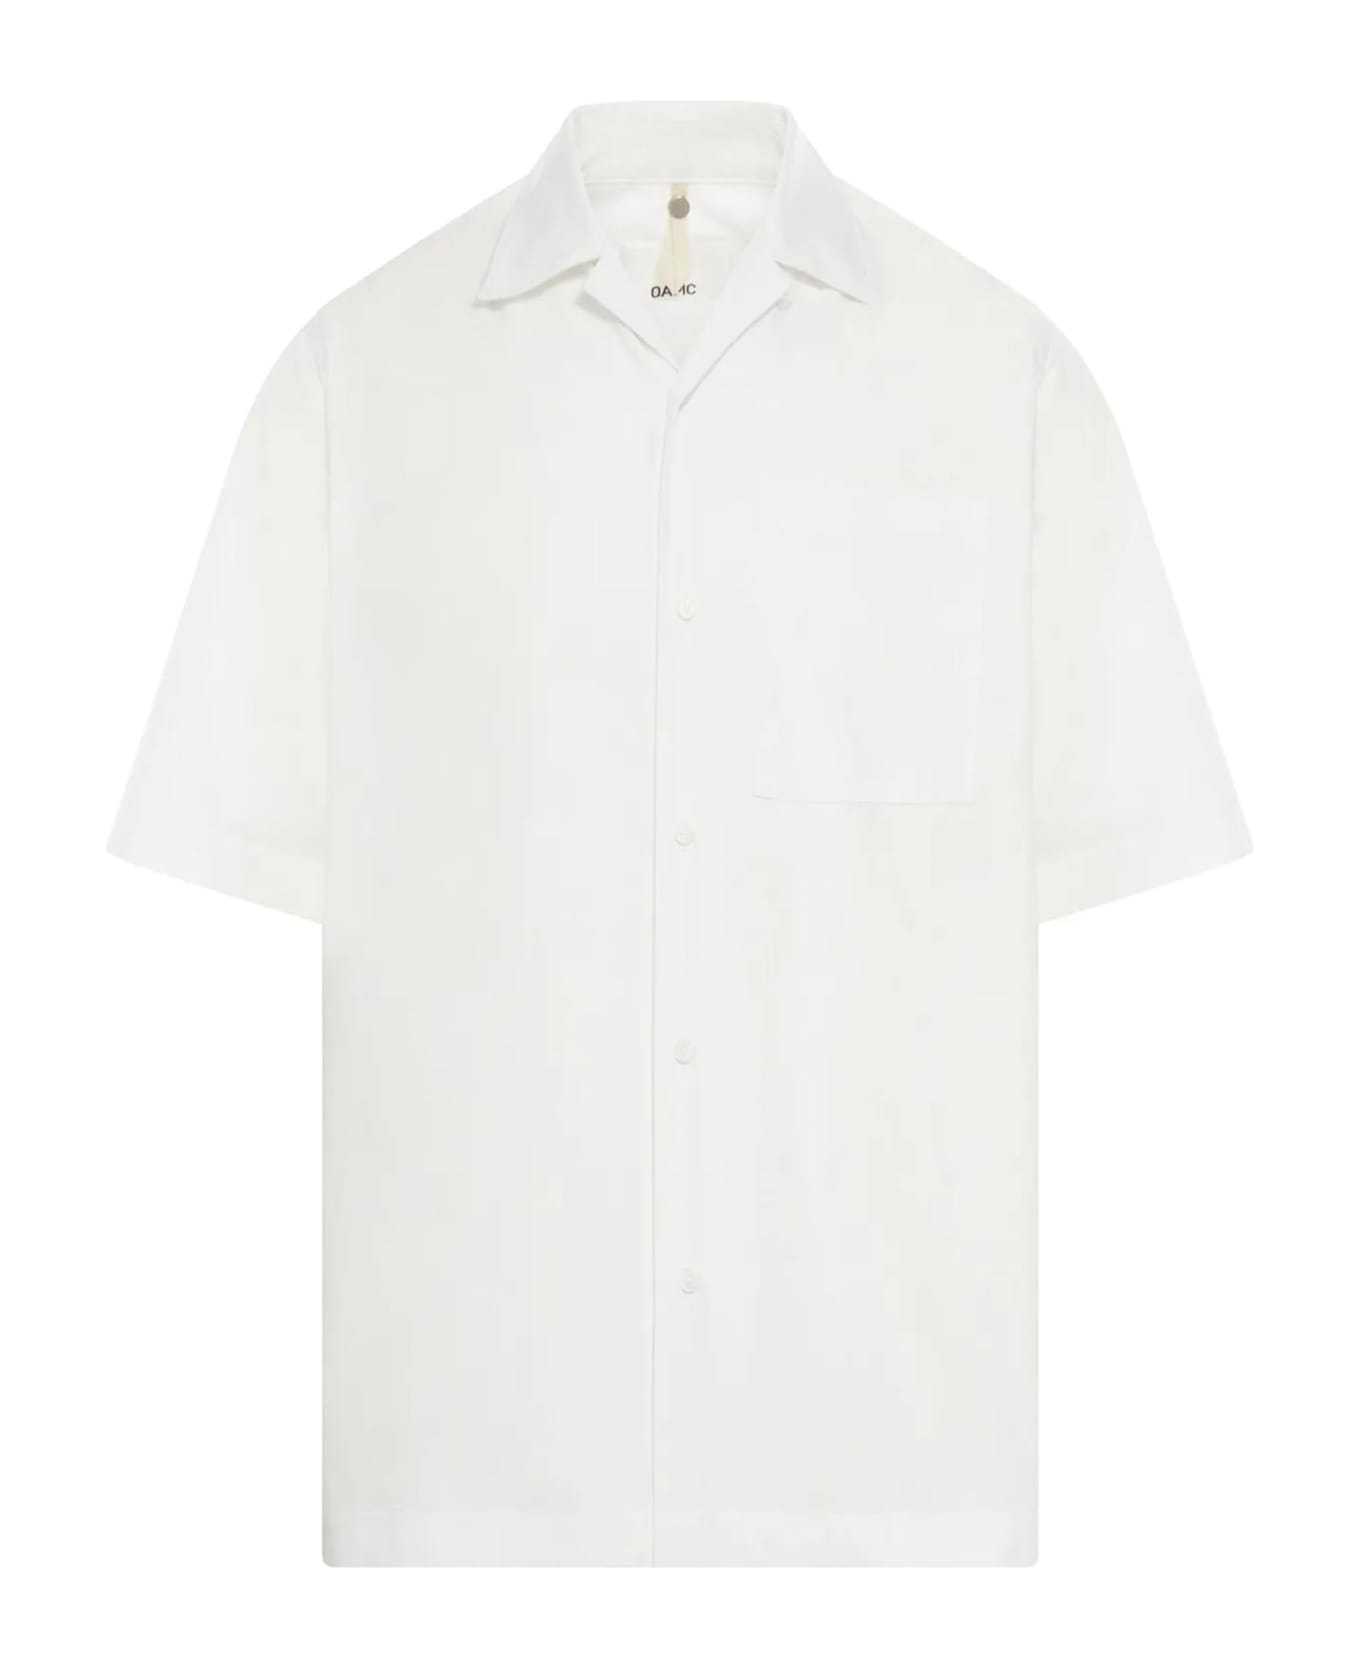 OAMC Shirts White - White